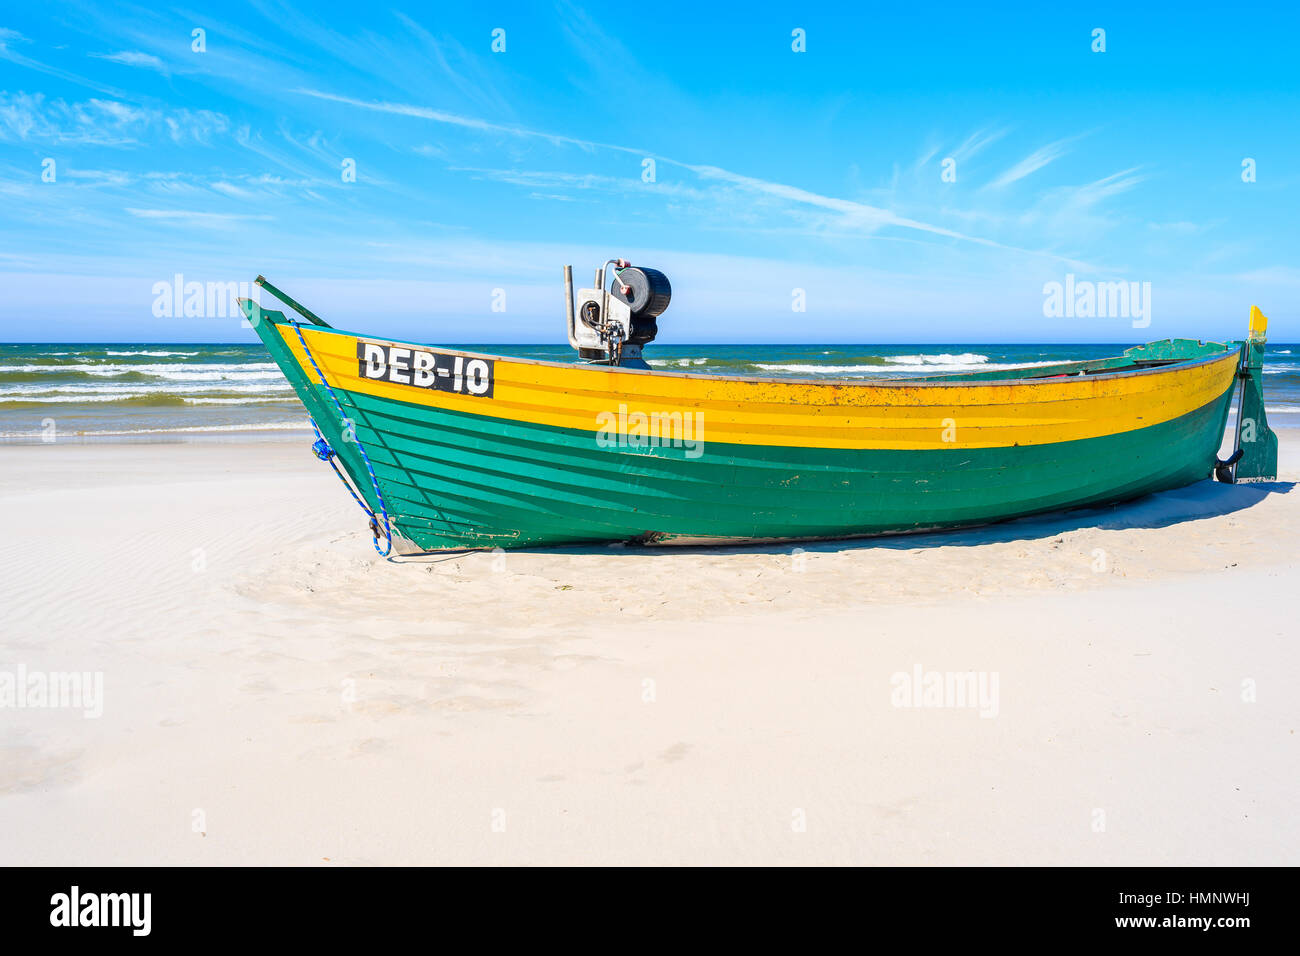 DEBKI PLAGE, MER BALTIQUE - JUN 18, 2016 : bateau de pêche colorés sur la plage de sable, côte de Debki de la mer Baltique, la Pologne. Banque D'Images